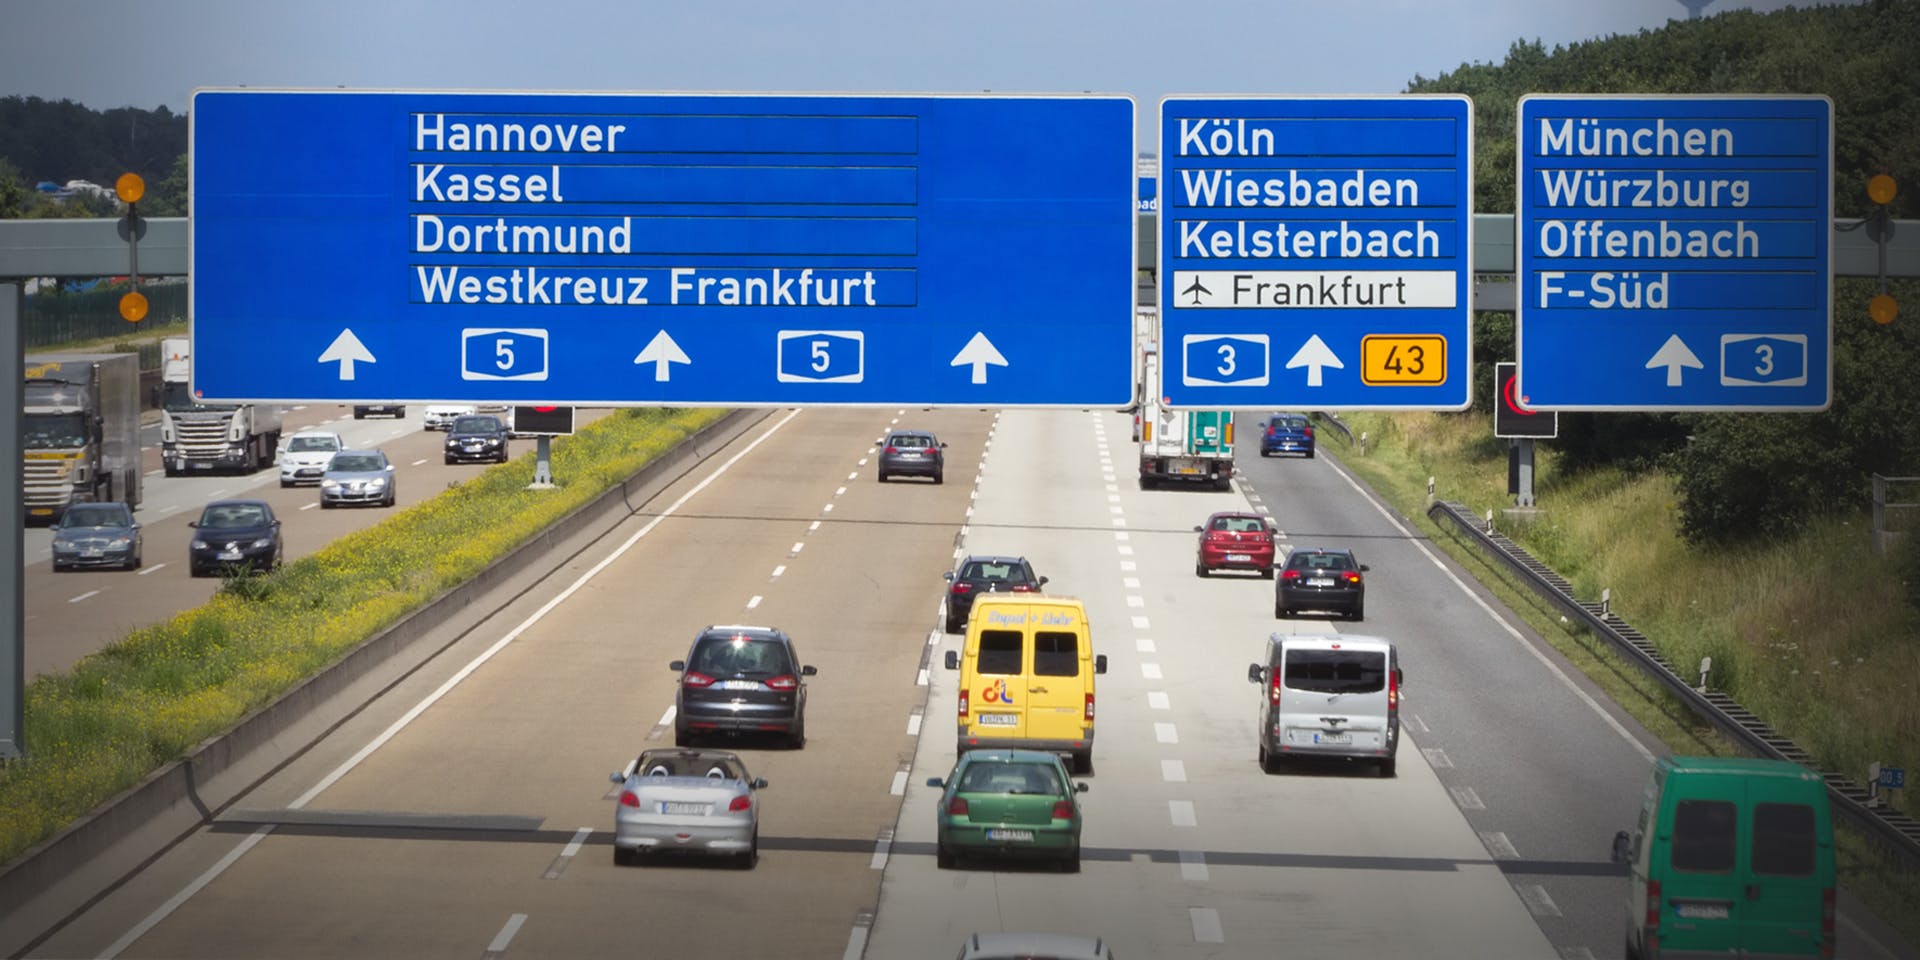 德國的Autobahn高速公路，傳統上並沒有速度限制，不過隨著車輛增張，在許多城鎮附近也開始有速限規定，不過仍有超過50%的路段是沒有強制速限